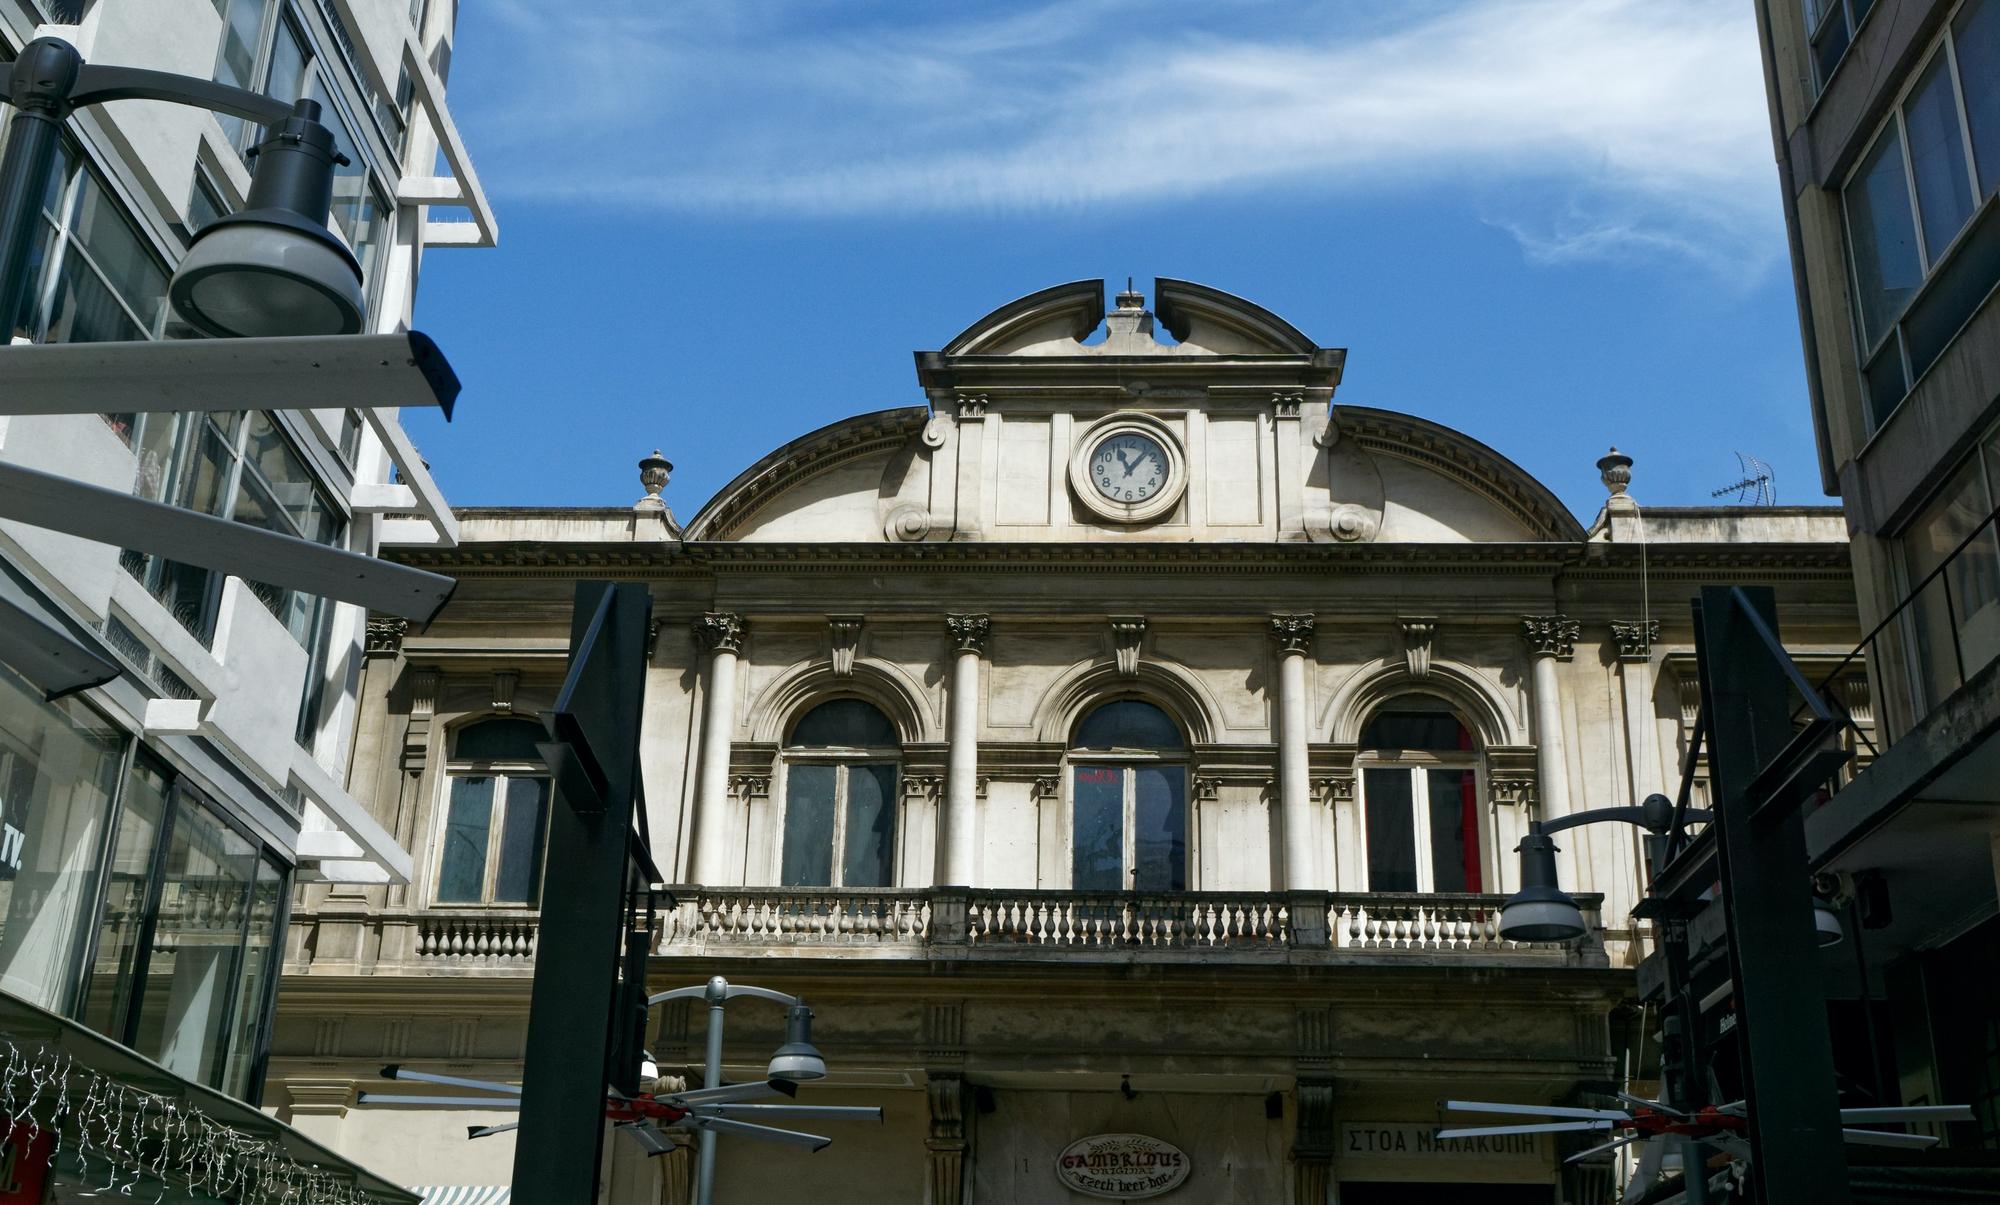 Στοά Μαλακοπή (Τράπεζα Θεσσαλονίκης), δημιούργημα του Vitaliano Poselli